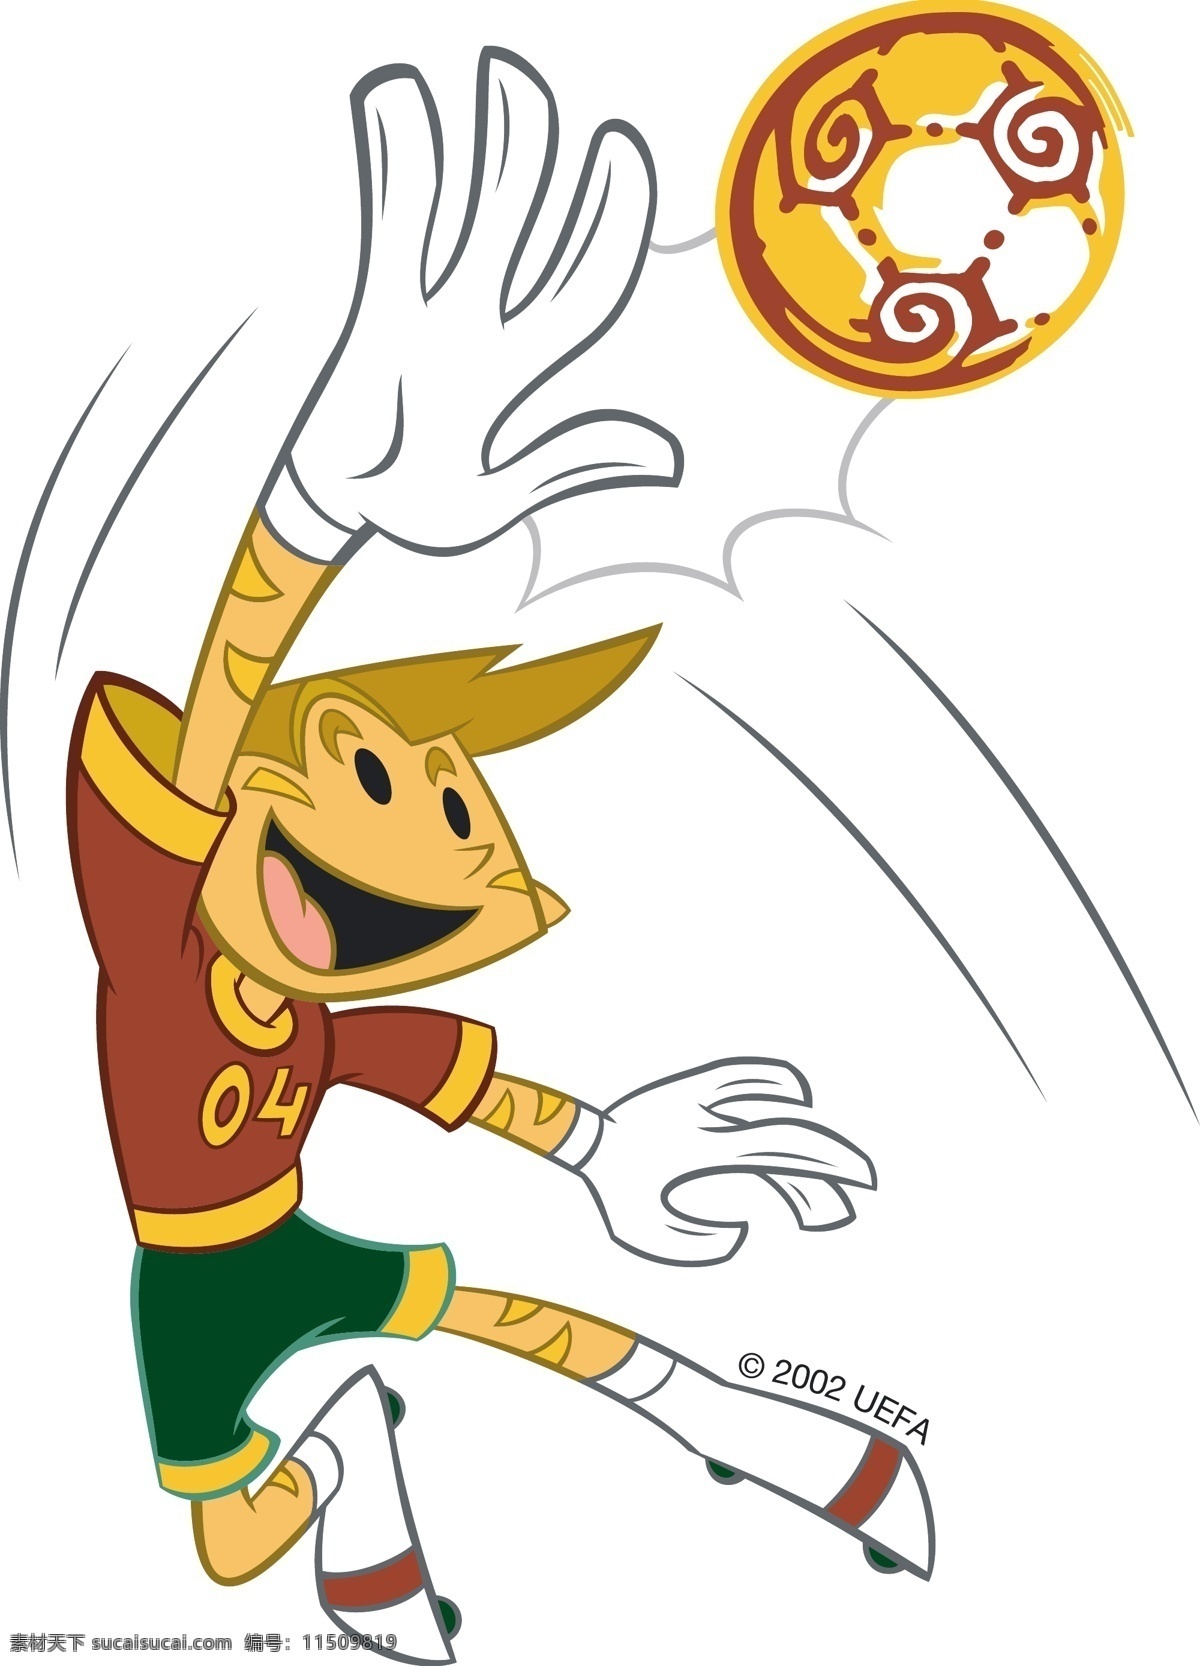 欧洲杯 2004 葡萄牙 激酶 官方 吉祥物 自由 标志 psd源文件 logo设计